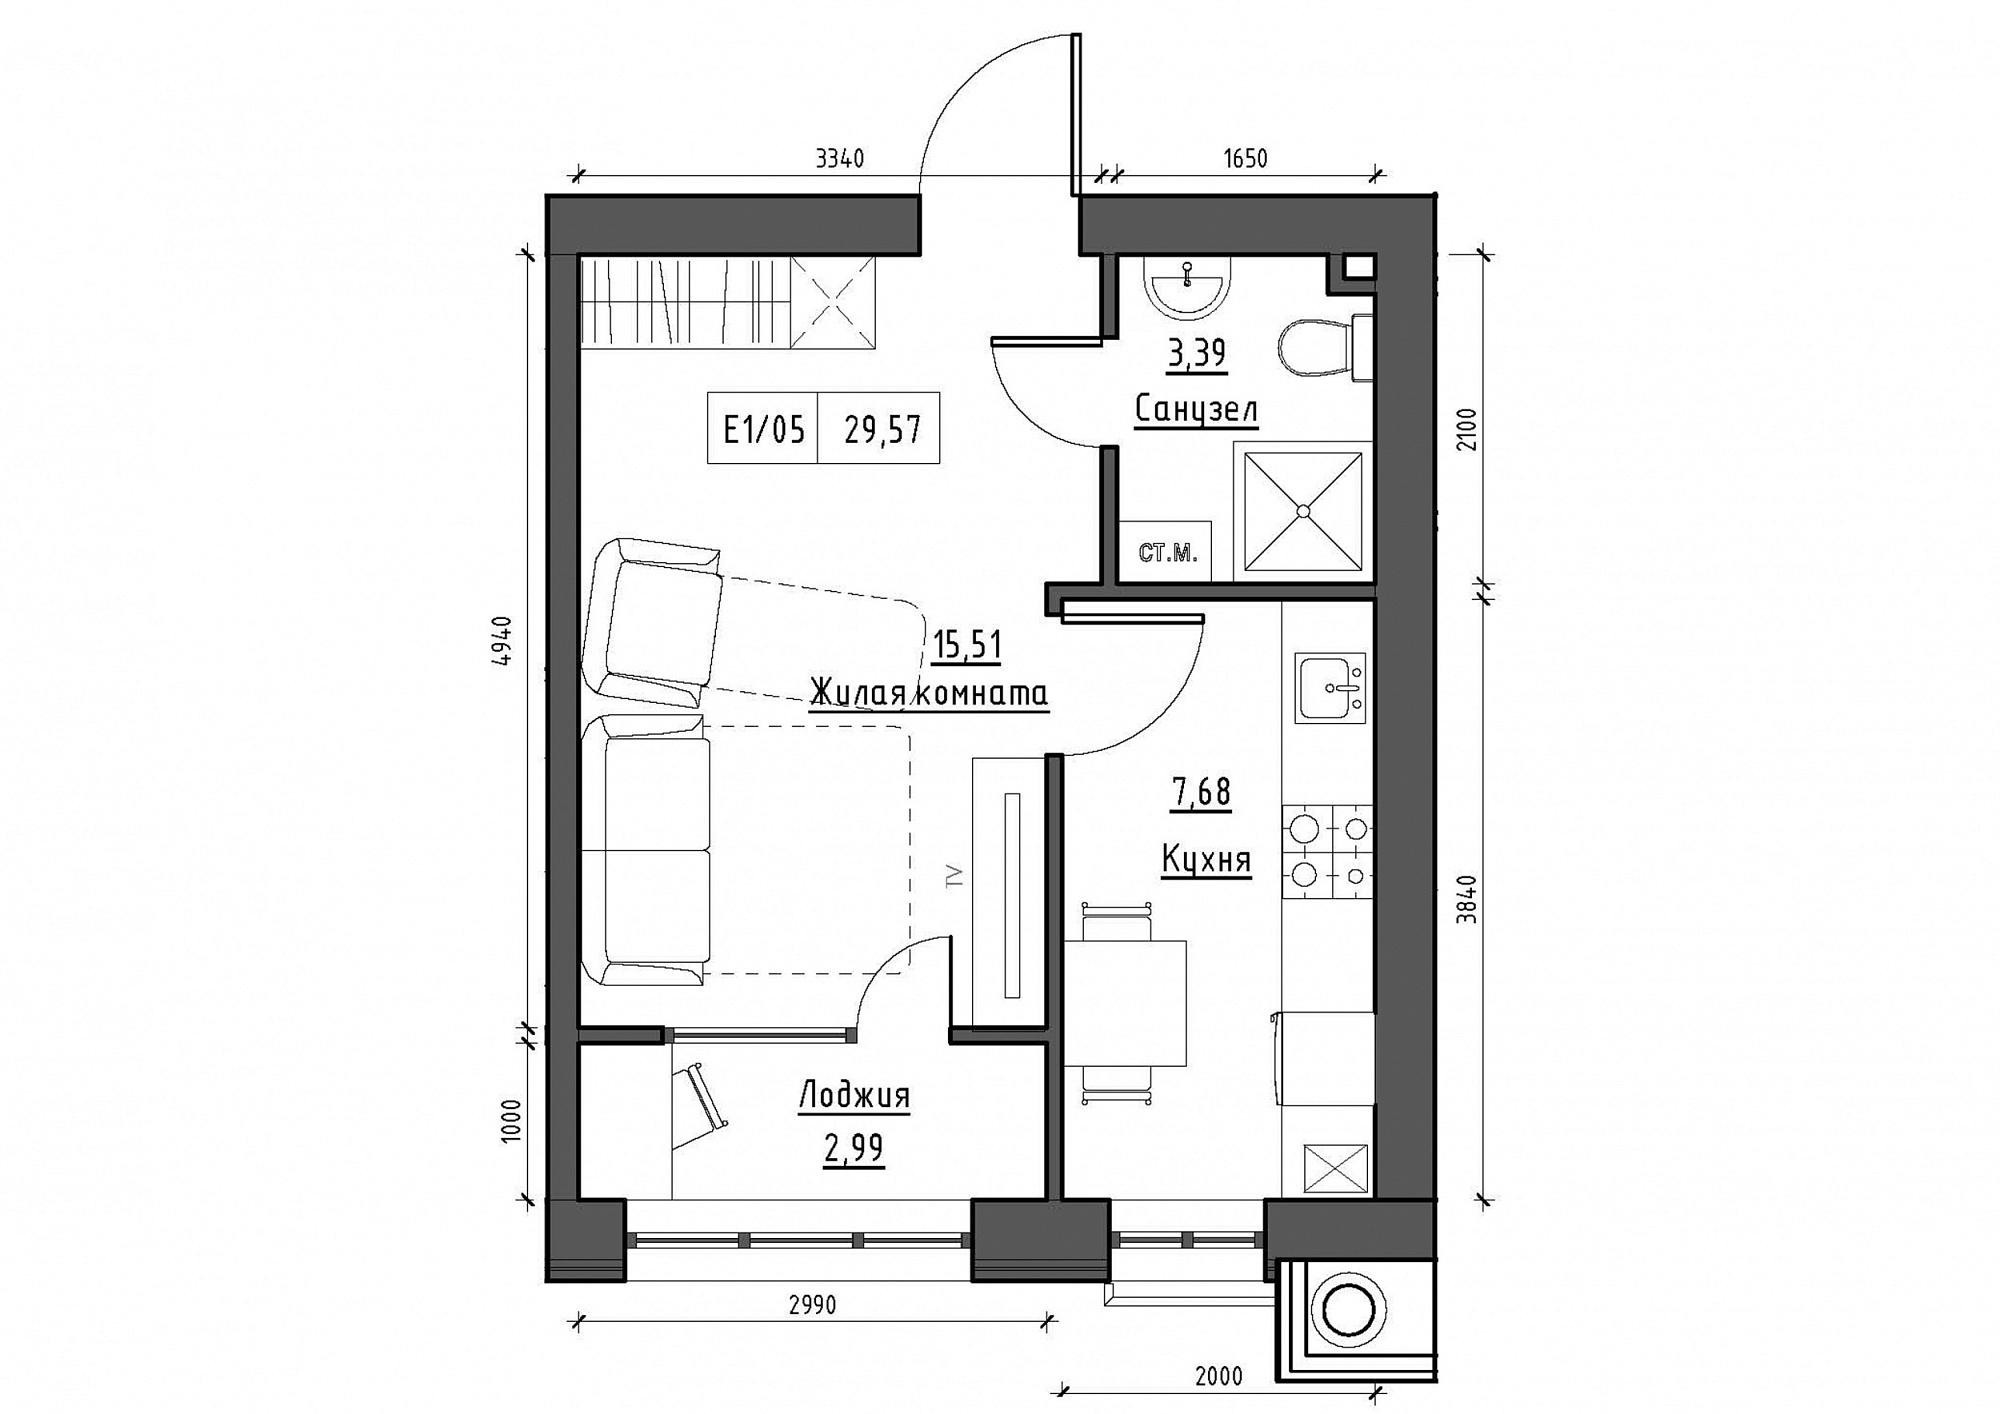 Планування 1-к квартира площею 29.57м2, KS-012-03/0006.